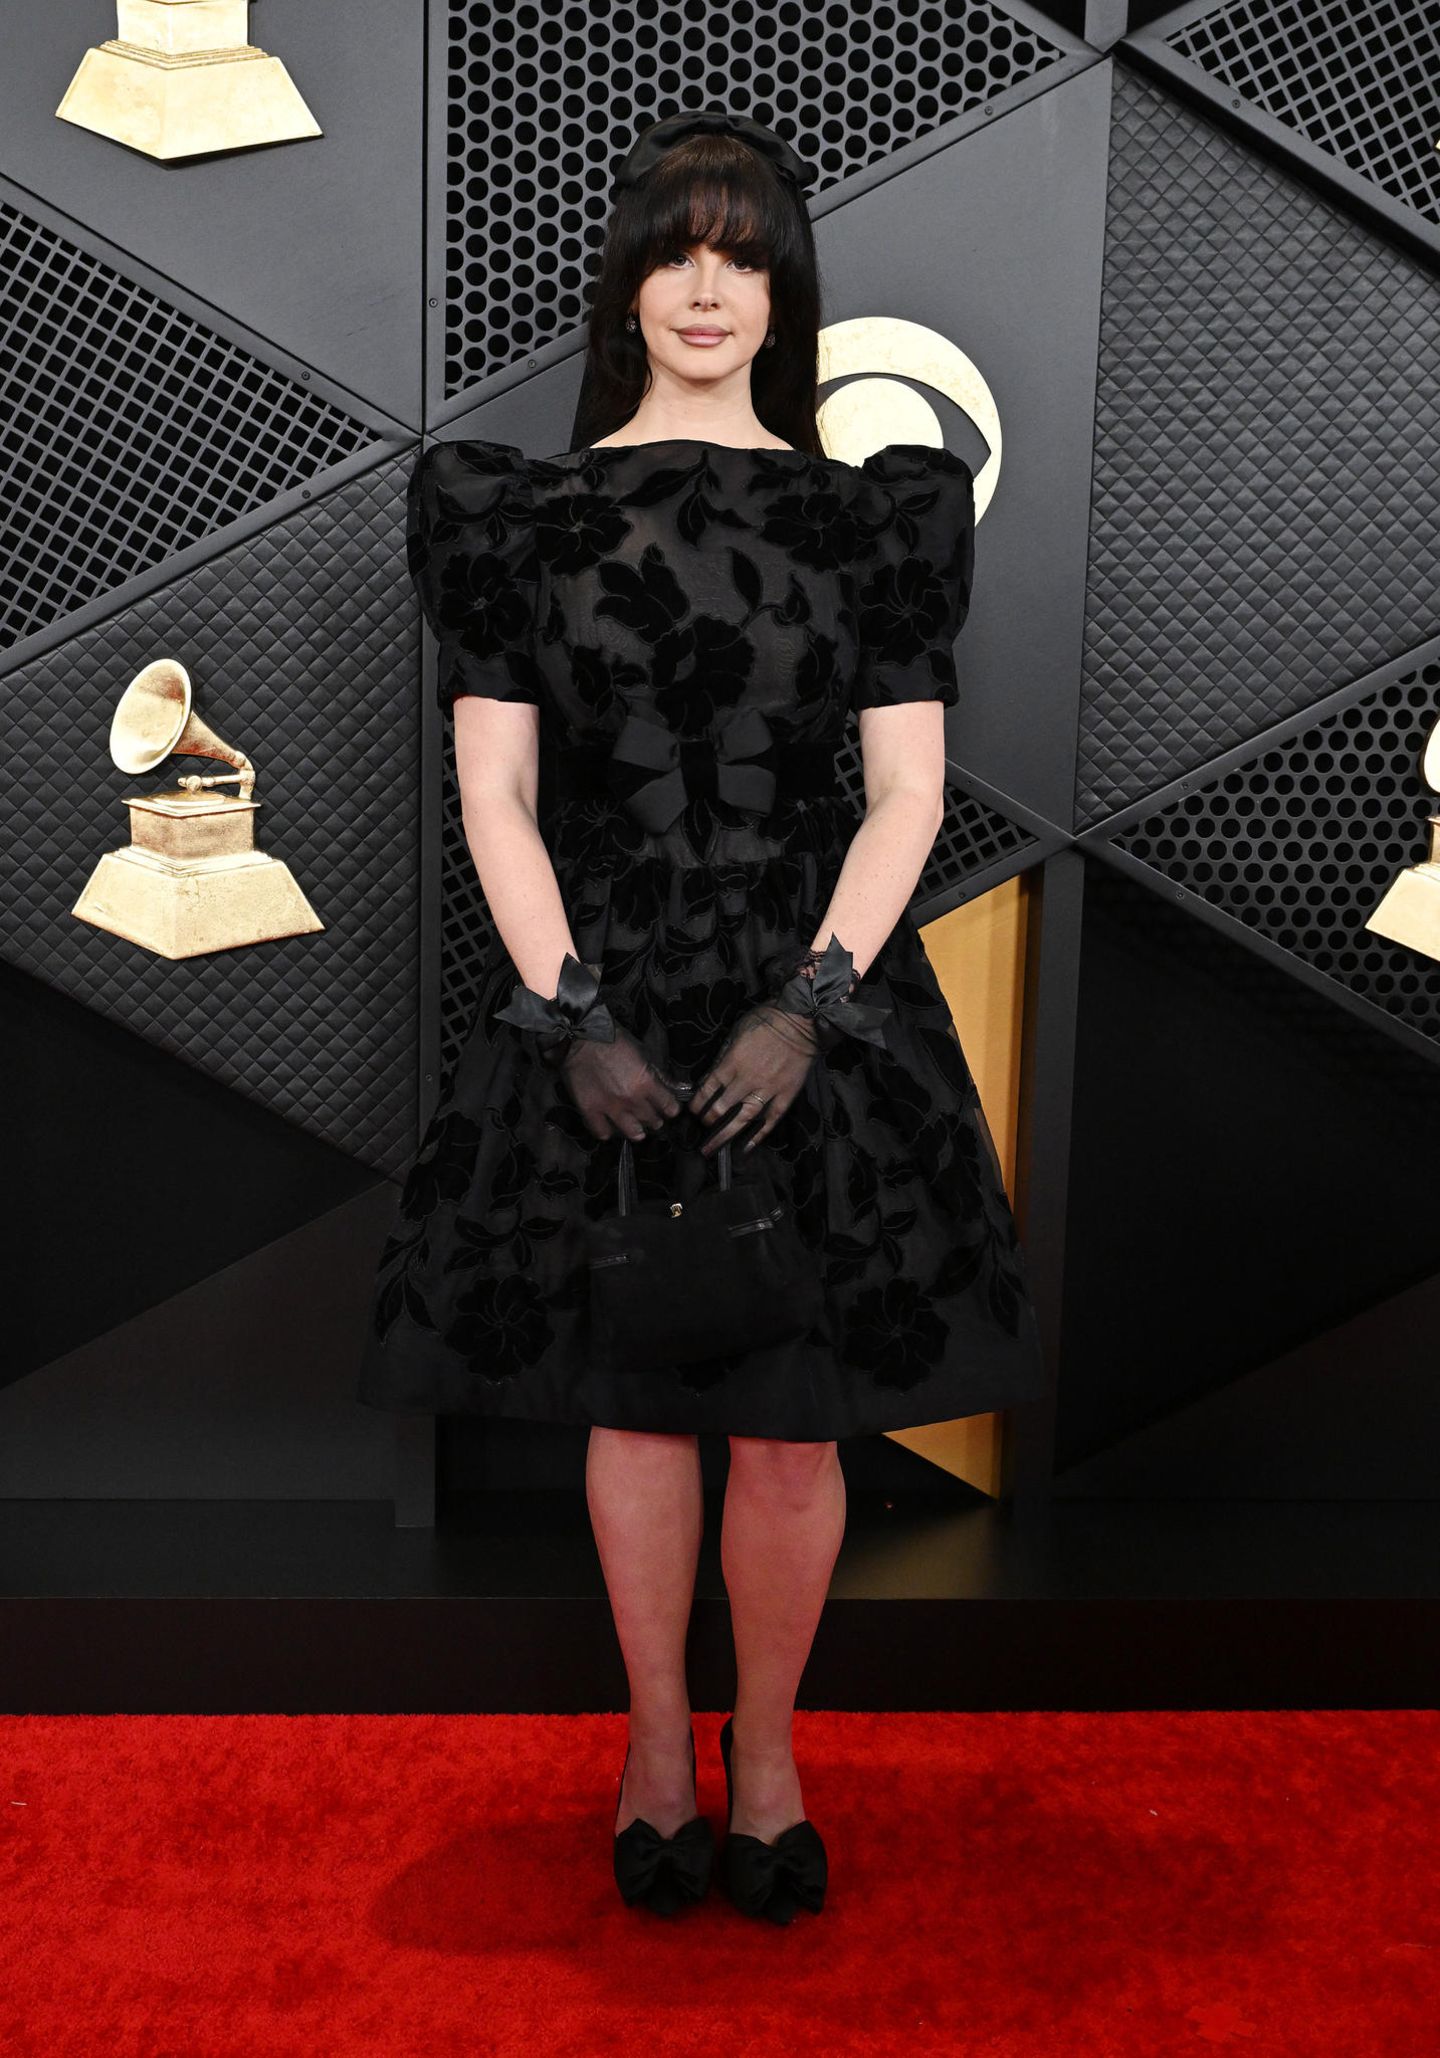 Einen dunkleren Look wählt Lana Del Rey. Sie trägt ein schwarzes Kleid mit Puffärmeln und einem Blumenmuster. Ein Hingucker sind ihre schwarzen, transparenten Handschuhe und ihr Haarreifen.